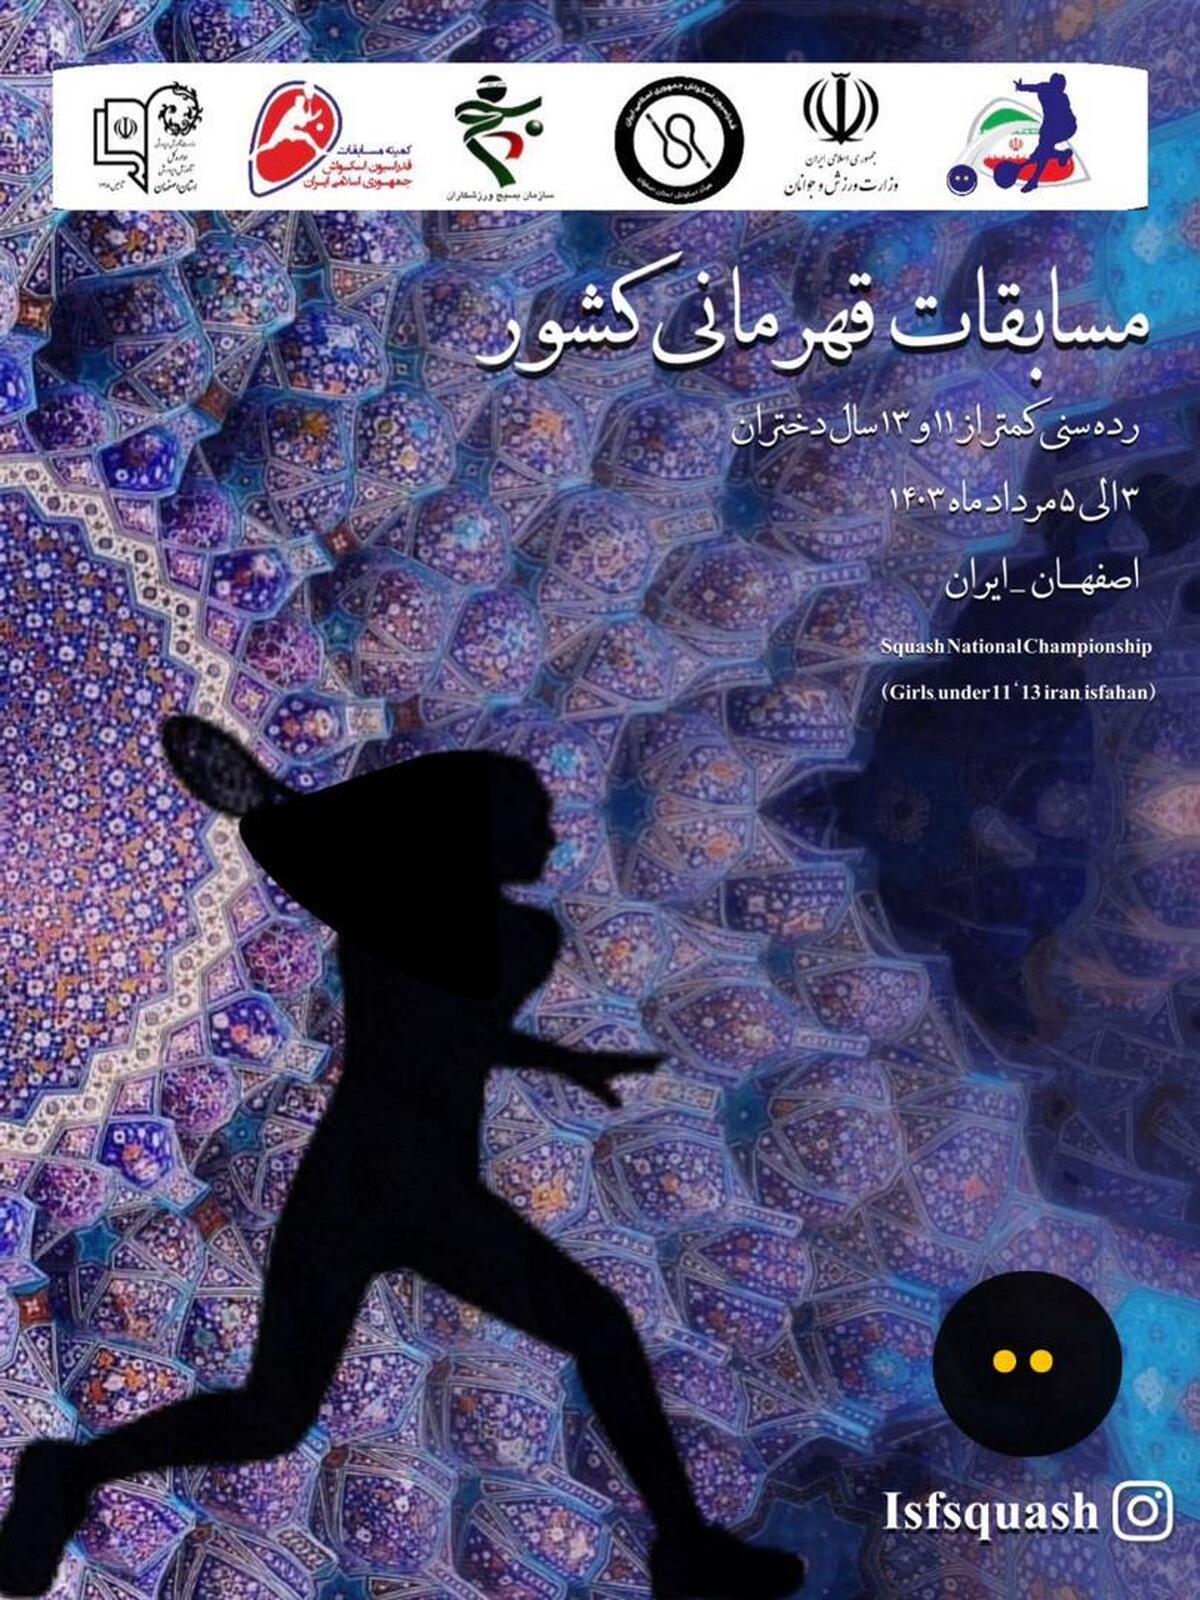 اصفهان میزبان اسکواش بازان دختر کمتر از ۱۱و ۱۳ سال